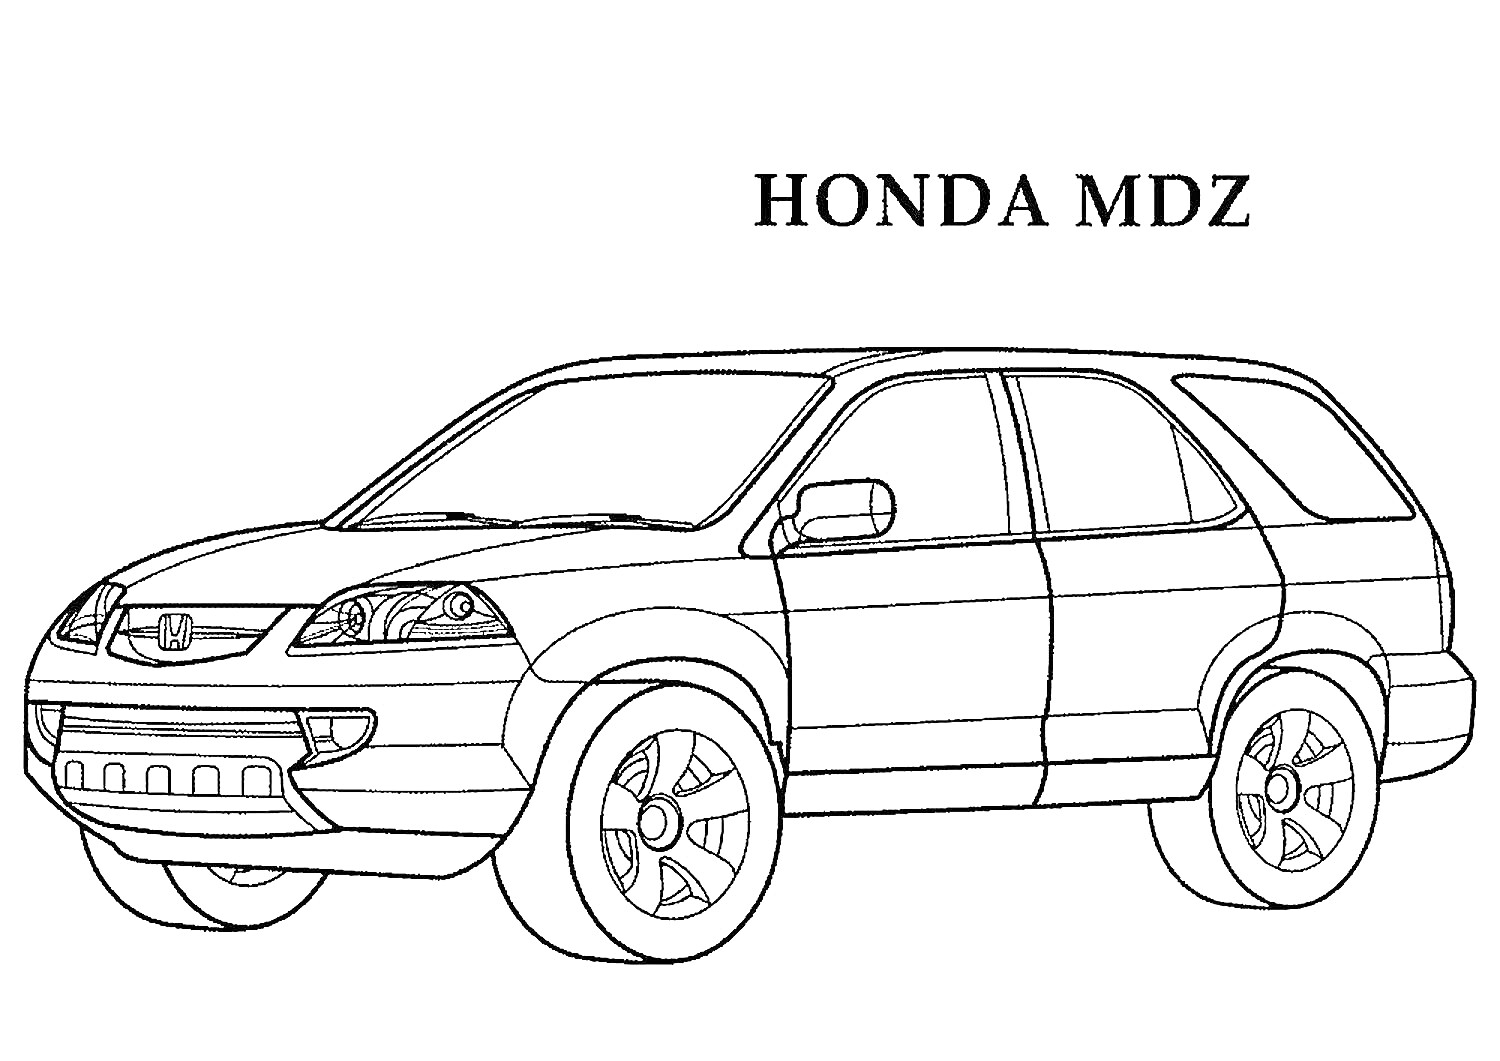 Раскраска автомобиля Honda MDZ с крупными колесами, передними и задними дверями, передними фарами и боковыми зеркалами